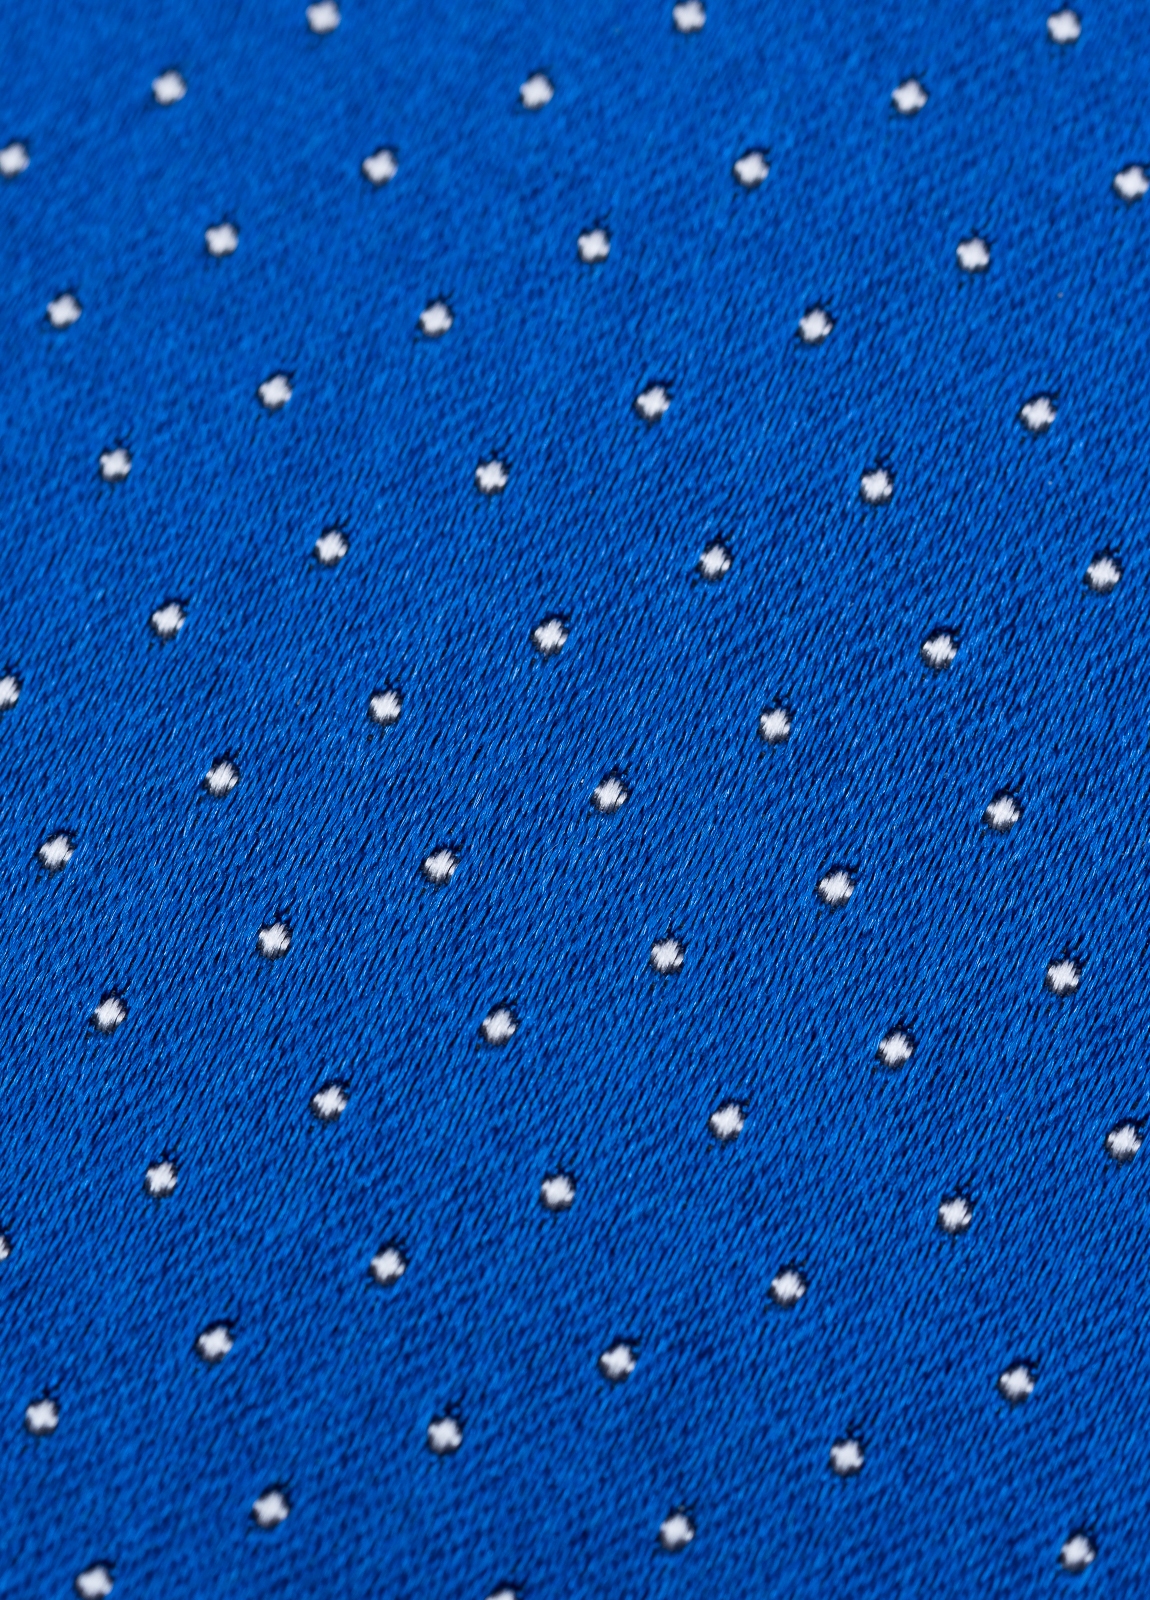 Corbata FUREST COLECCIÓN color azulón con micro topito - Ítem2